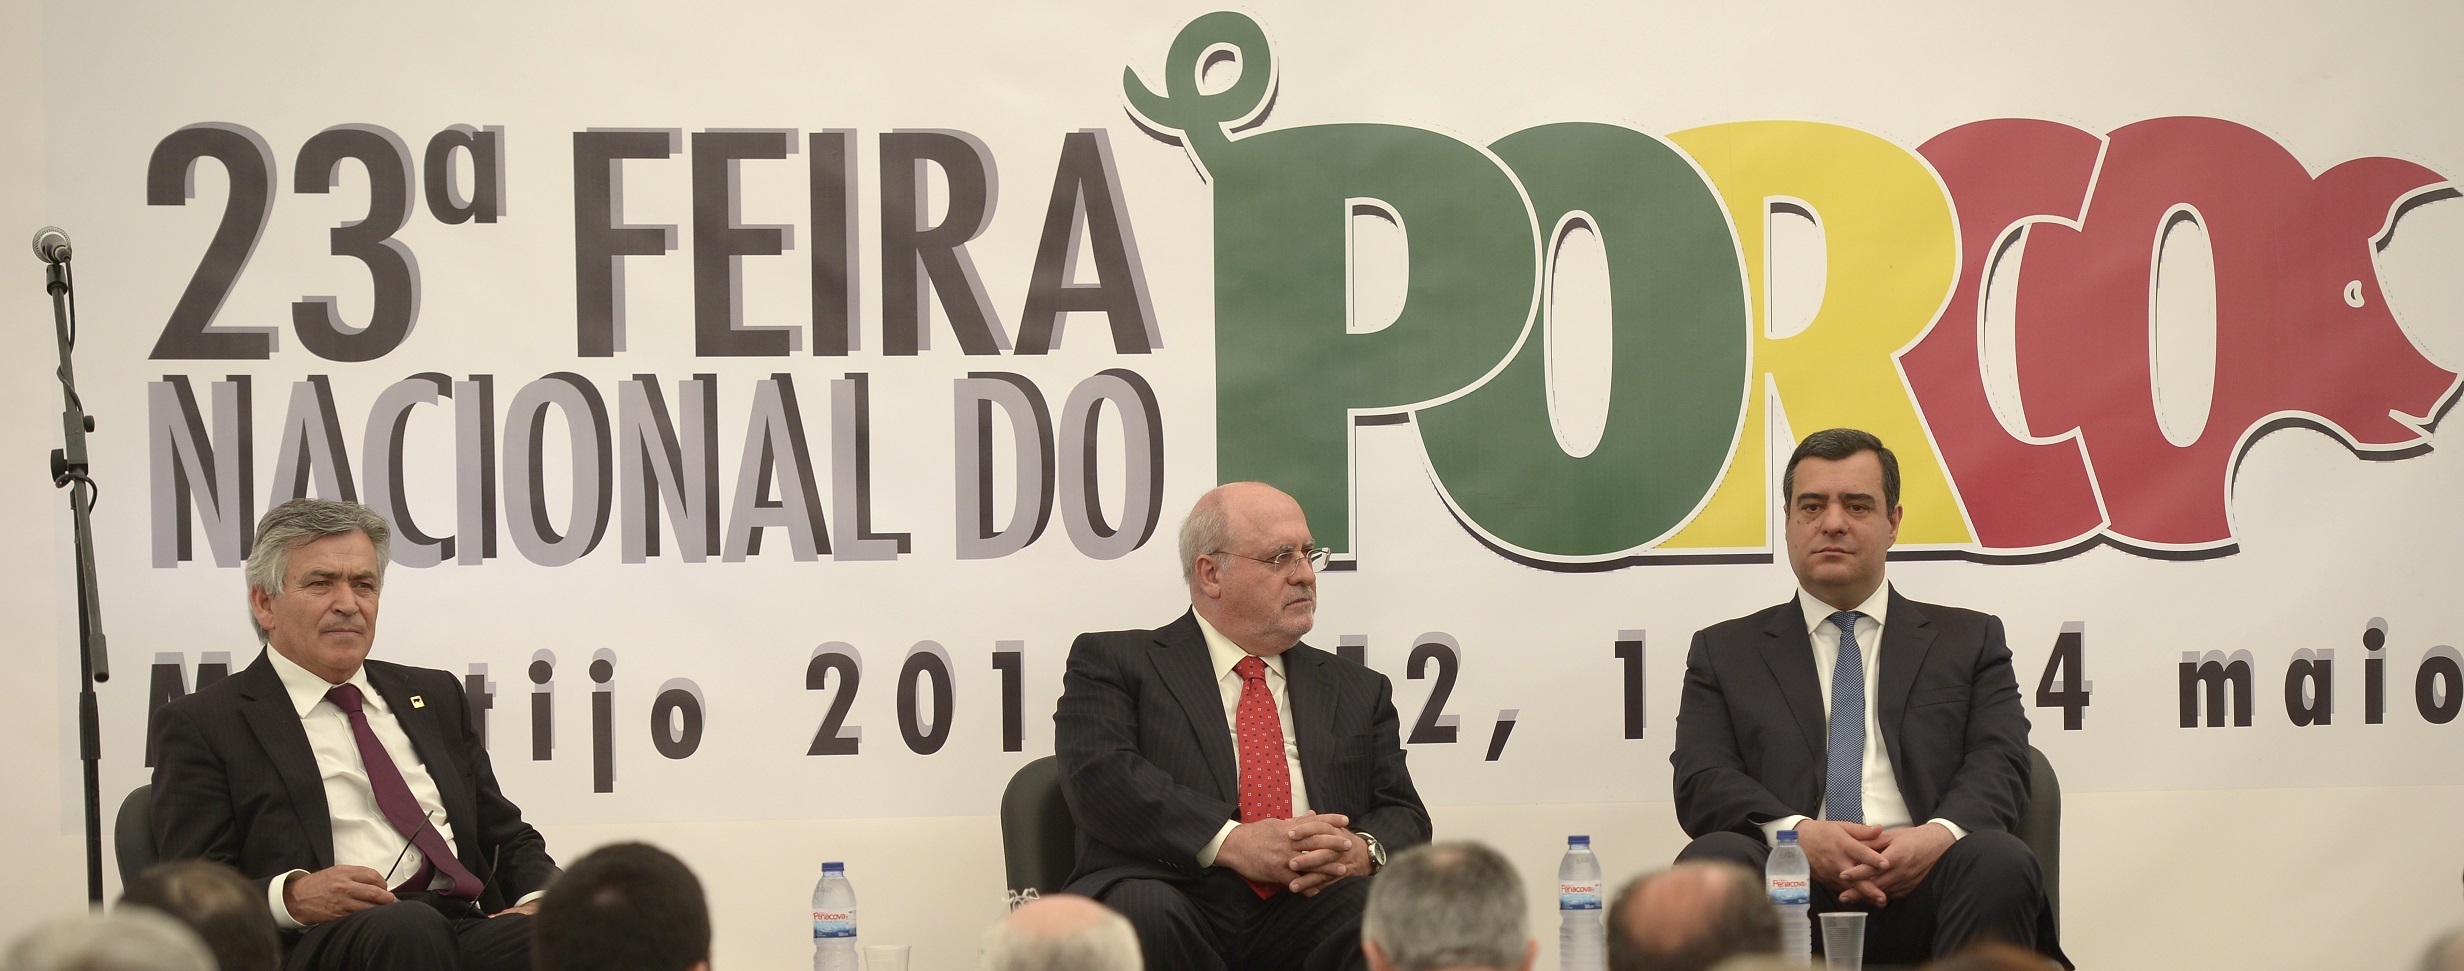 Ministro da Agricultura inaugura Feira do Porco (c/vídeo)